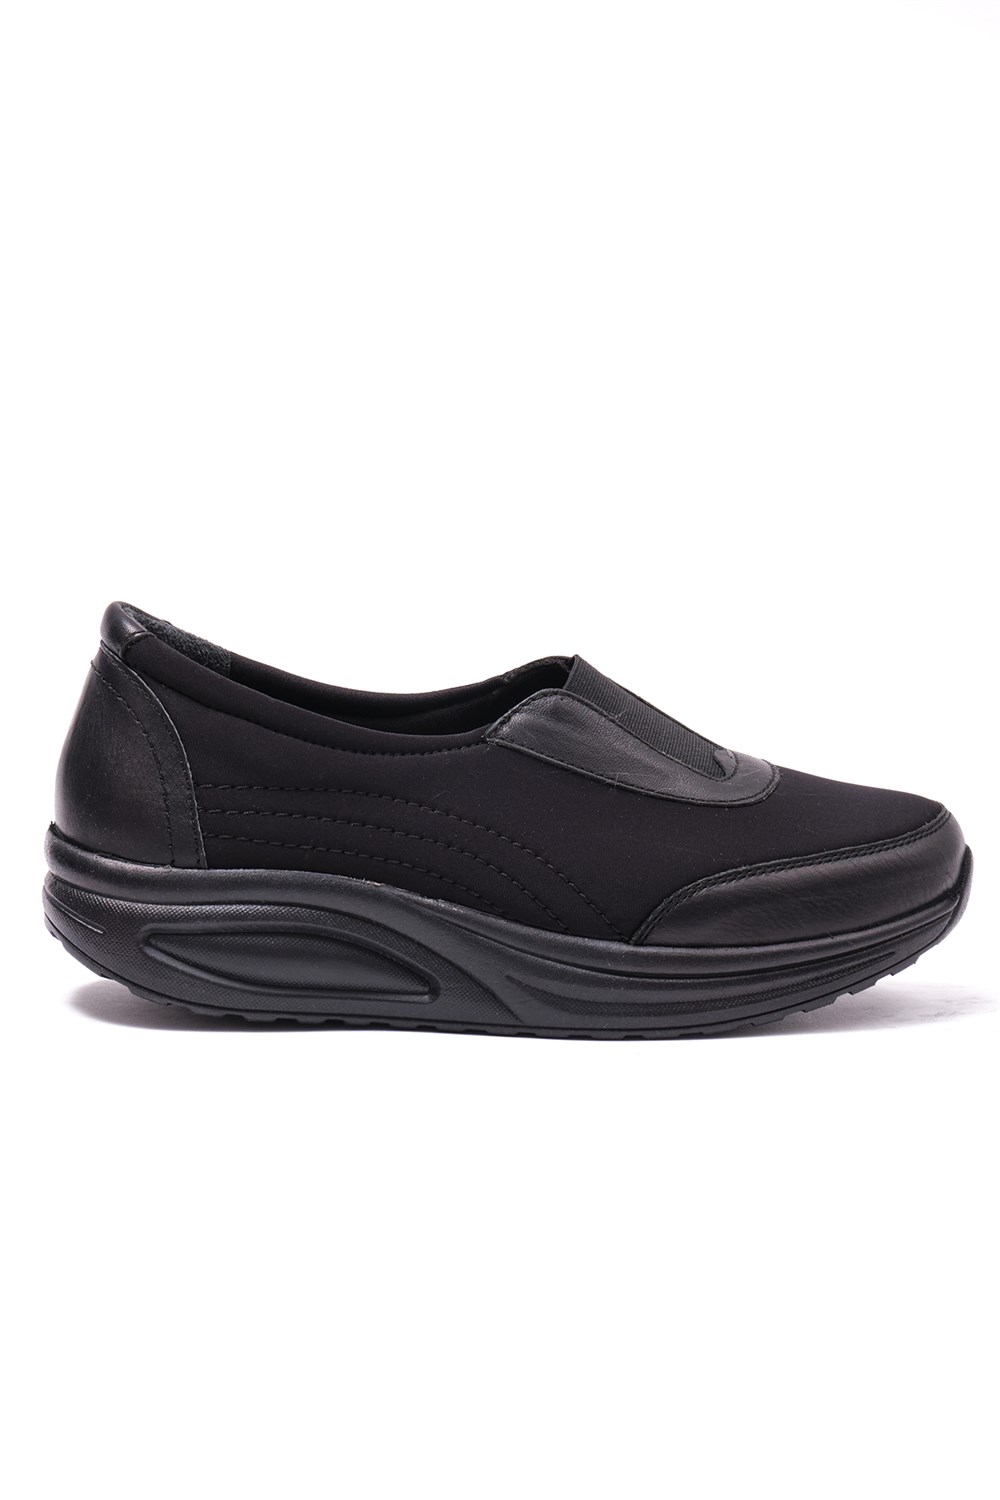 Beety 96.2610  Kadın Comfort Casual Ayakkabı